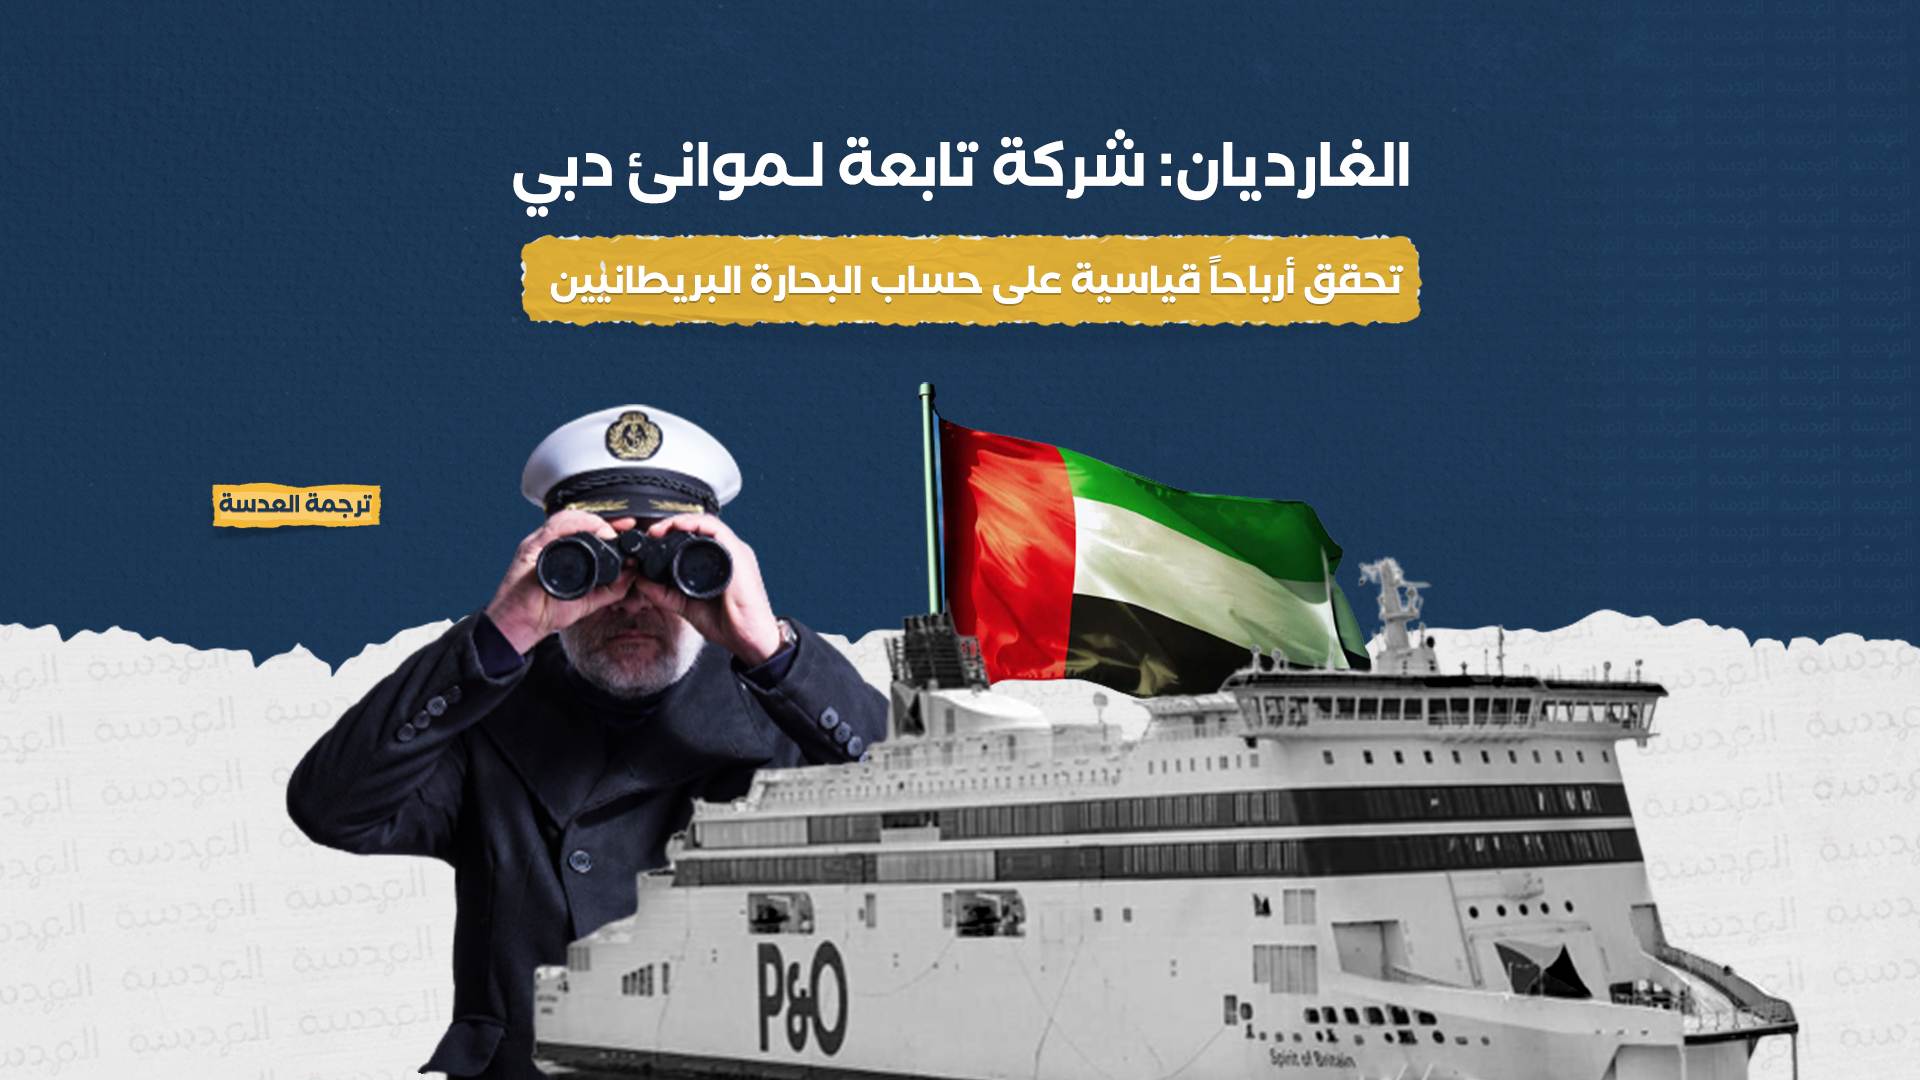 الغارديان: شركة تابعة لـموانئ دبي تحقق أرباحاً قياسية على حساب البحارة البريطانيين